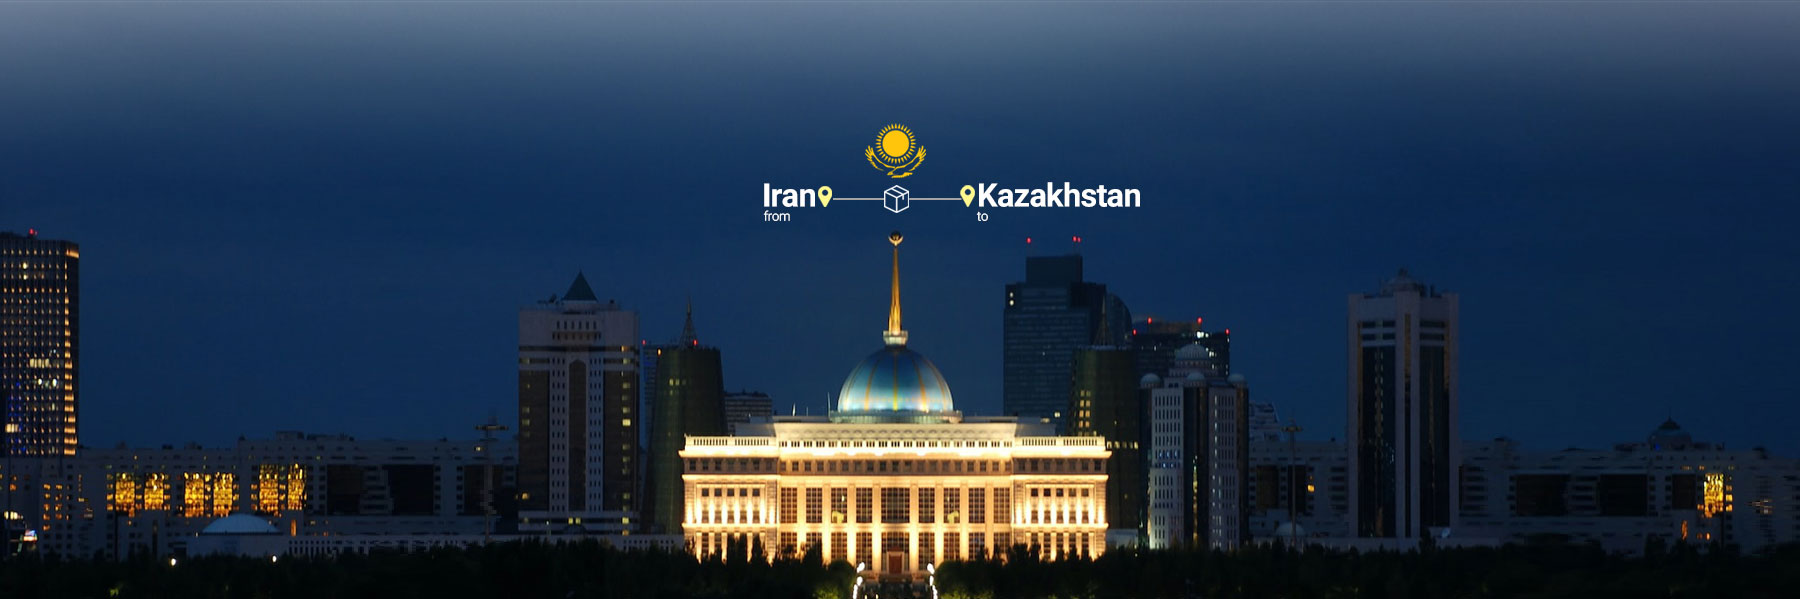 حمل بار به قزاقستان